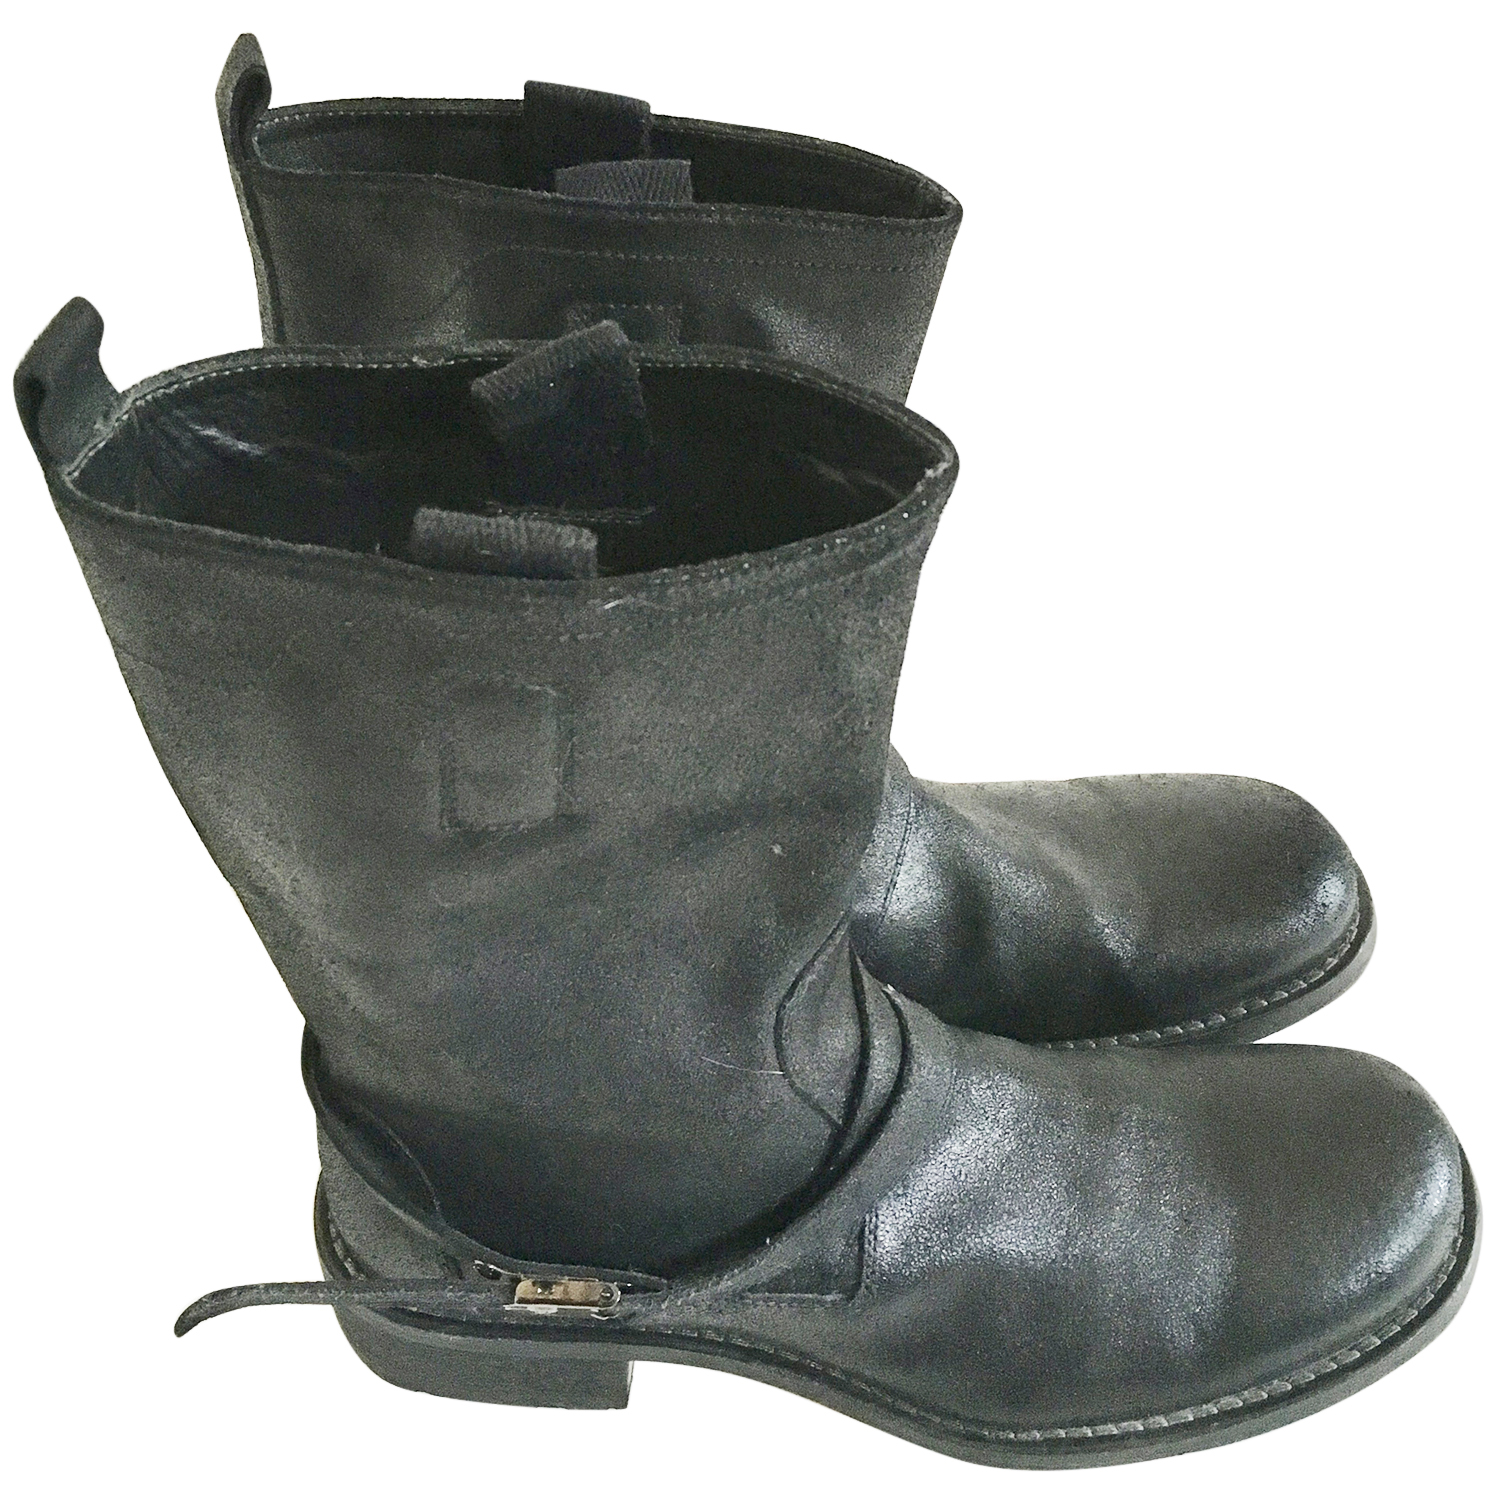 neil barrett boots